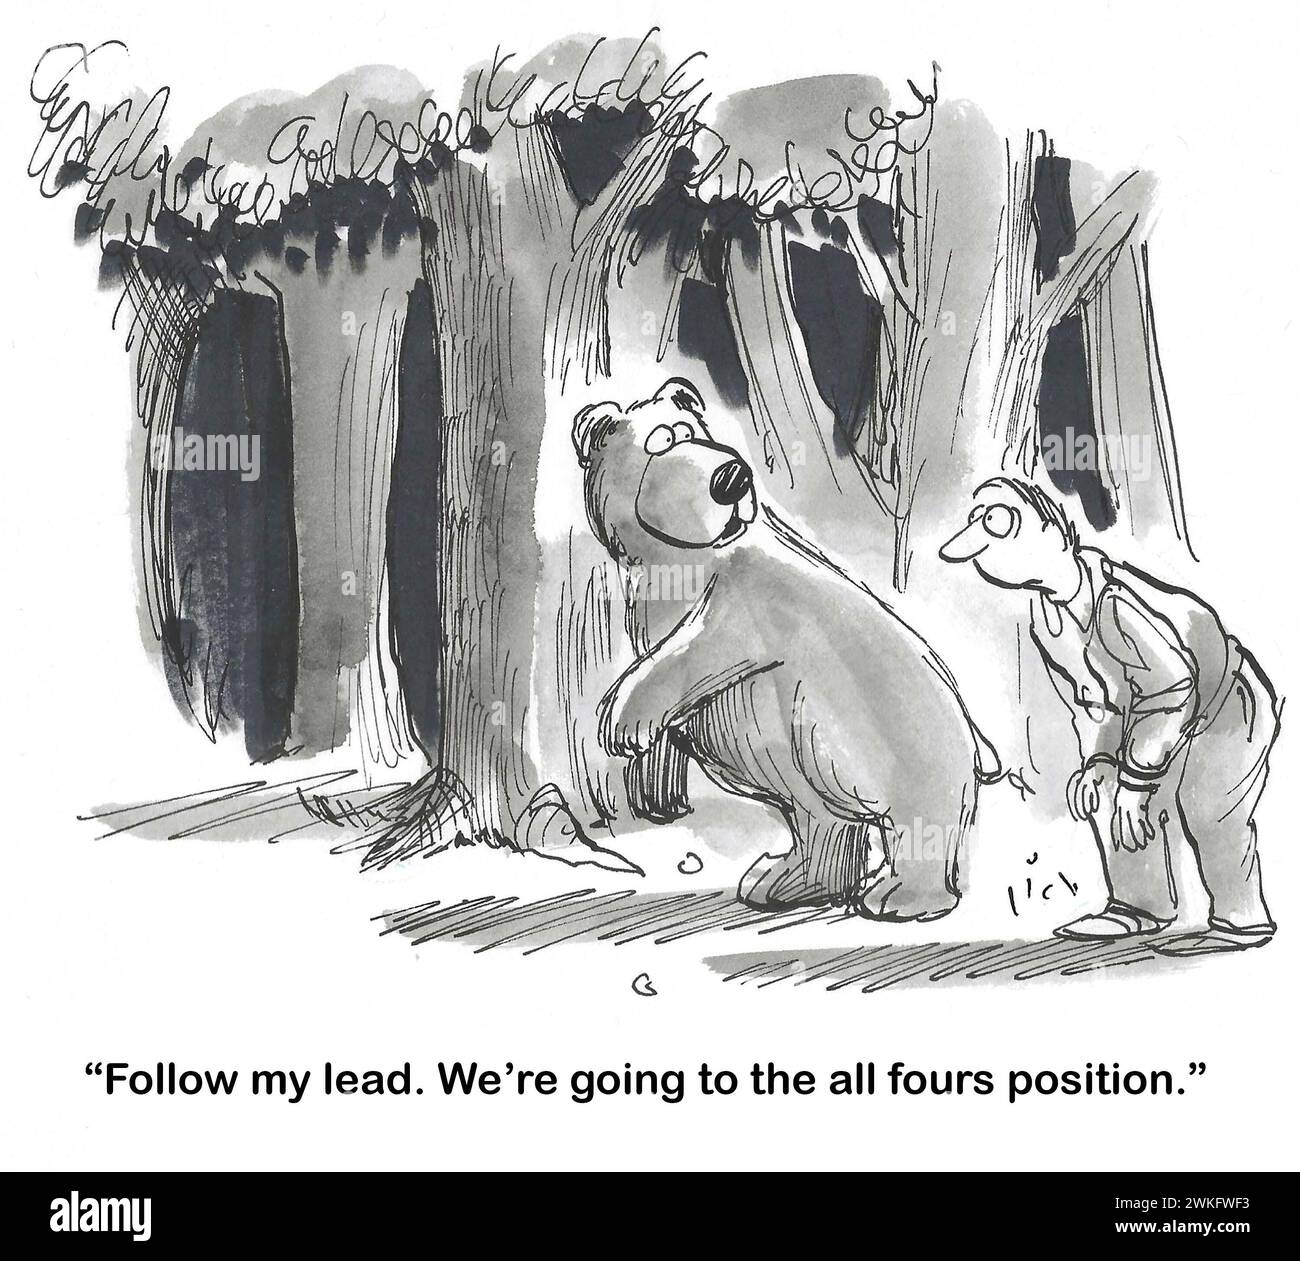 Fumetto BW di un orso e un uomo nel bosco. L'orso dice all'uomo di entrare nella "posizione a tutte le quattro ruote". Foto Stock